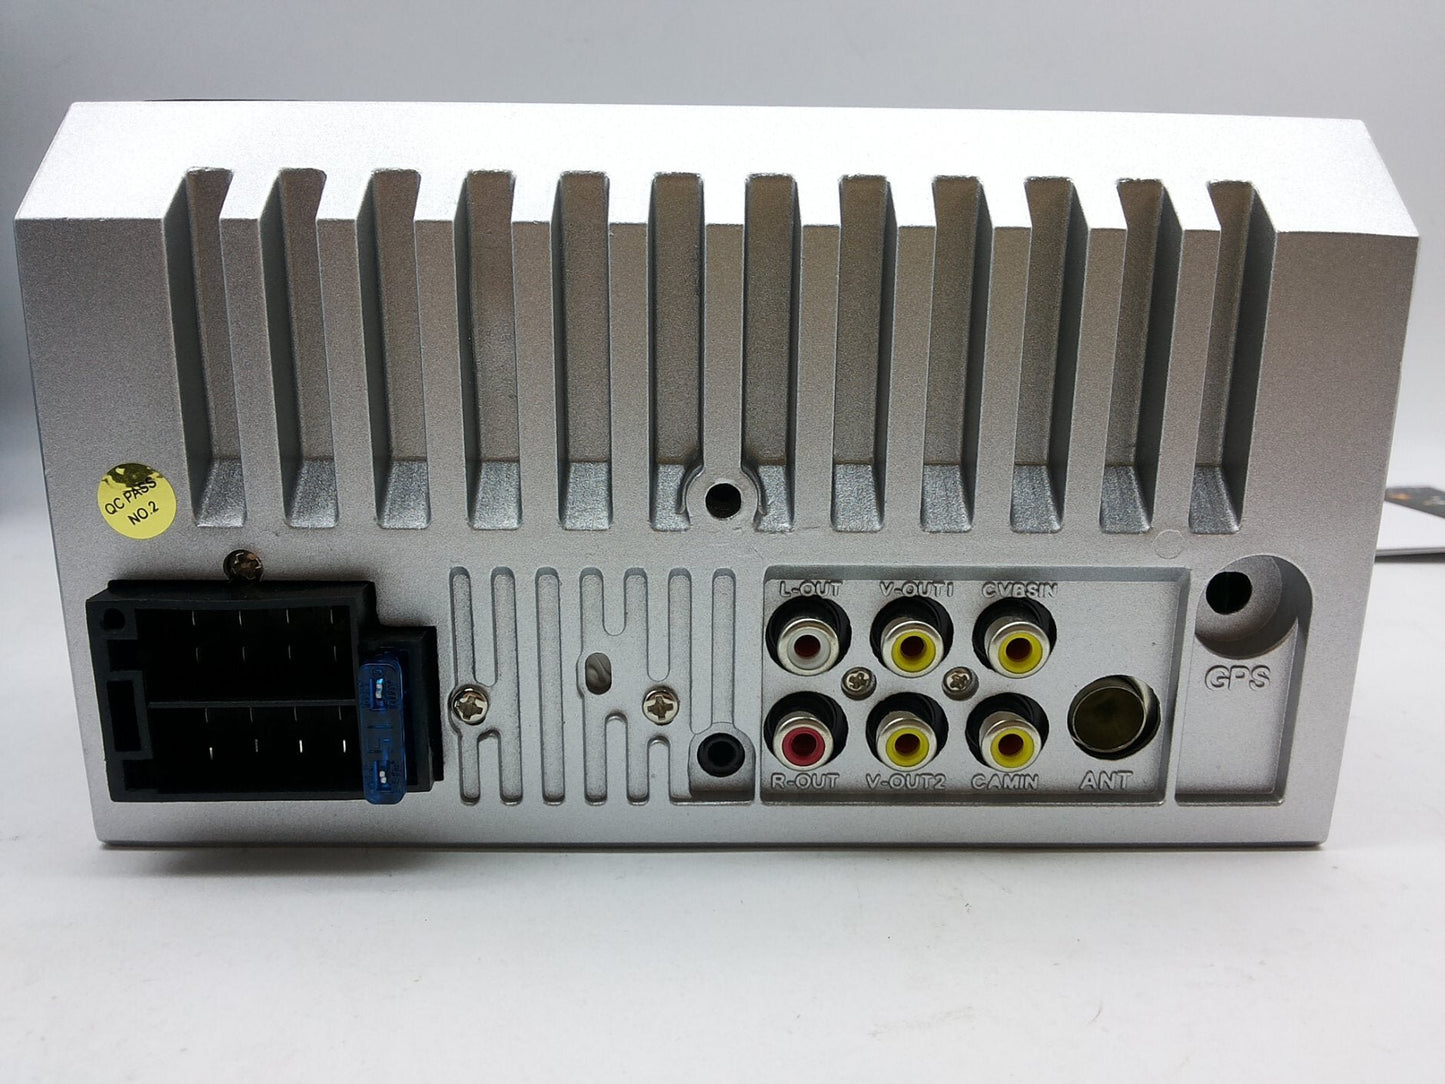 Multimedia auto radio sistem 7018B